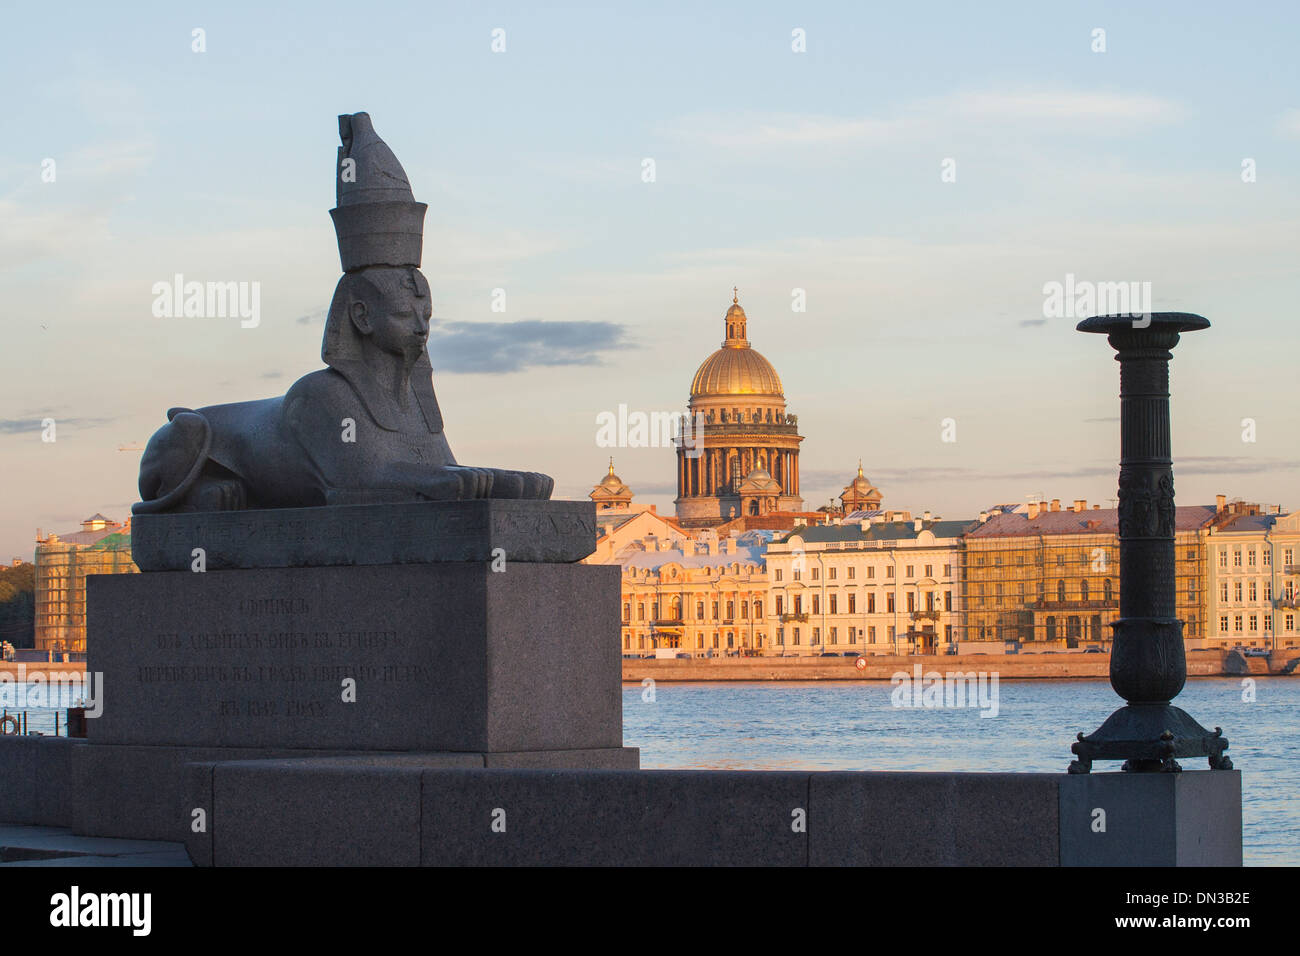 Russland, St. Petersburg, Sphinx University Embankment und Abend Blick auf die englischen Böschung und St Isaacs Kathedrale Stockfoto